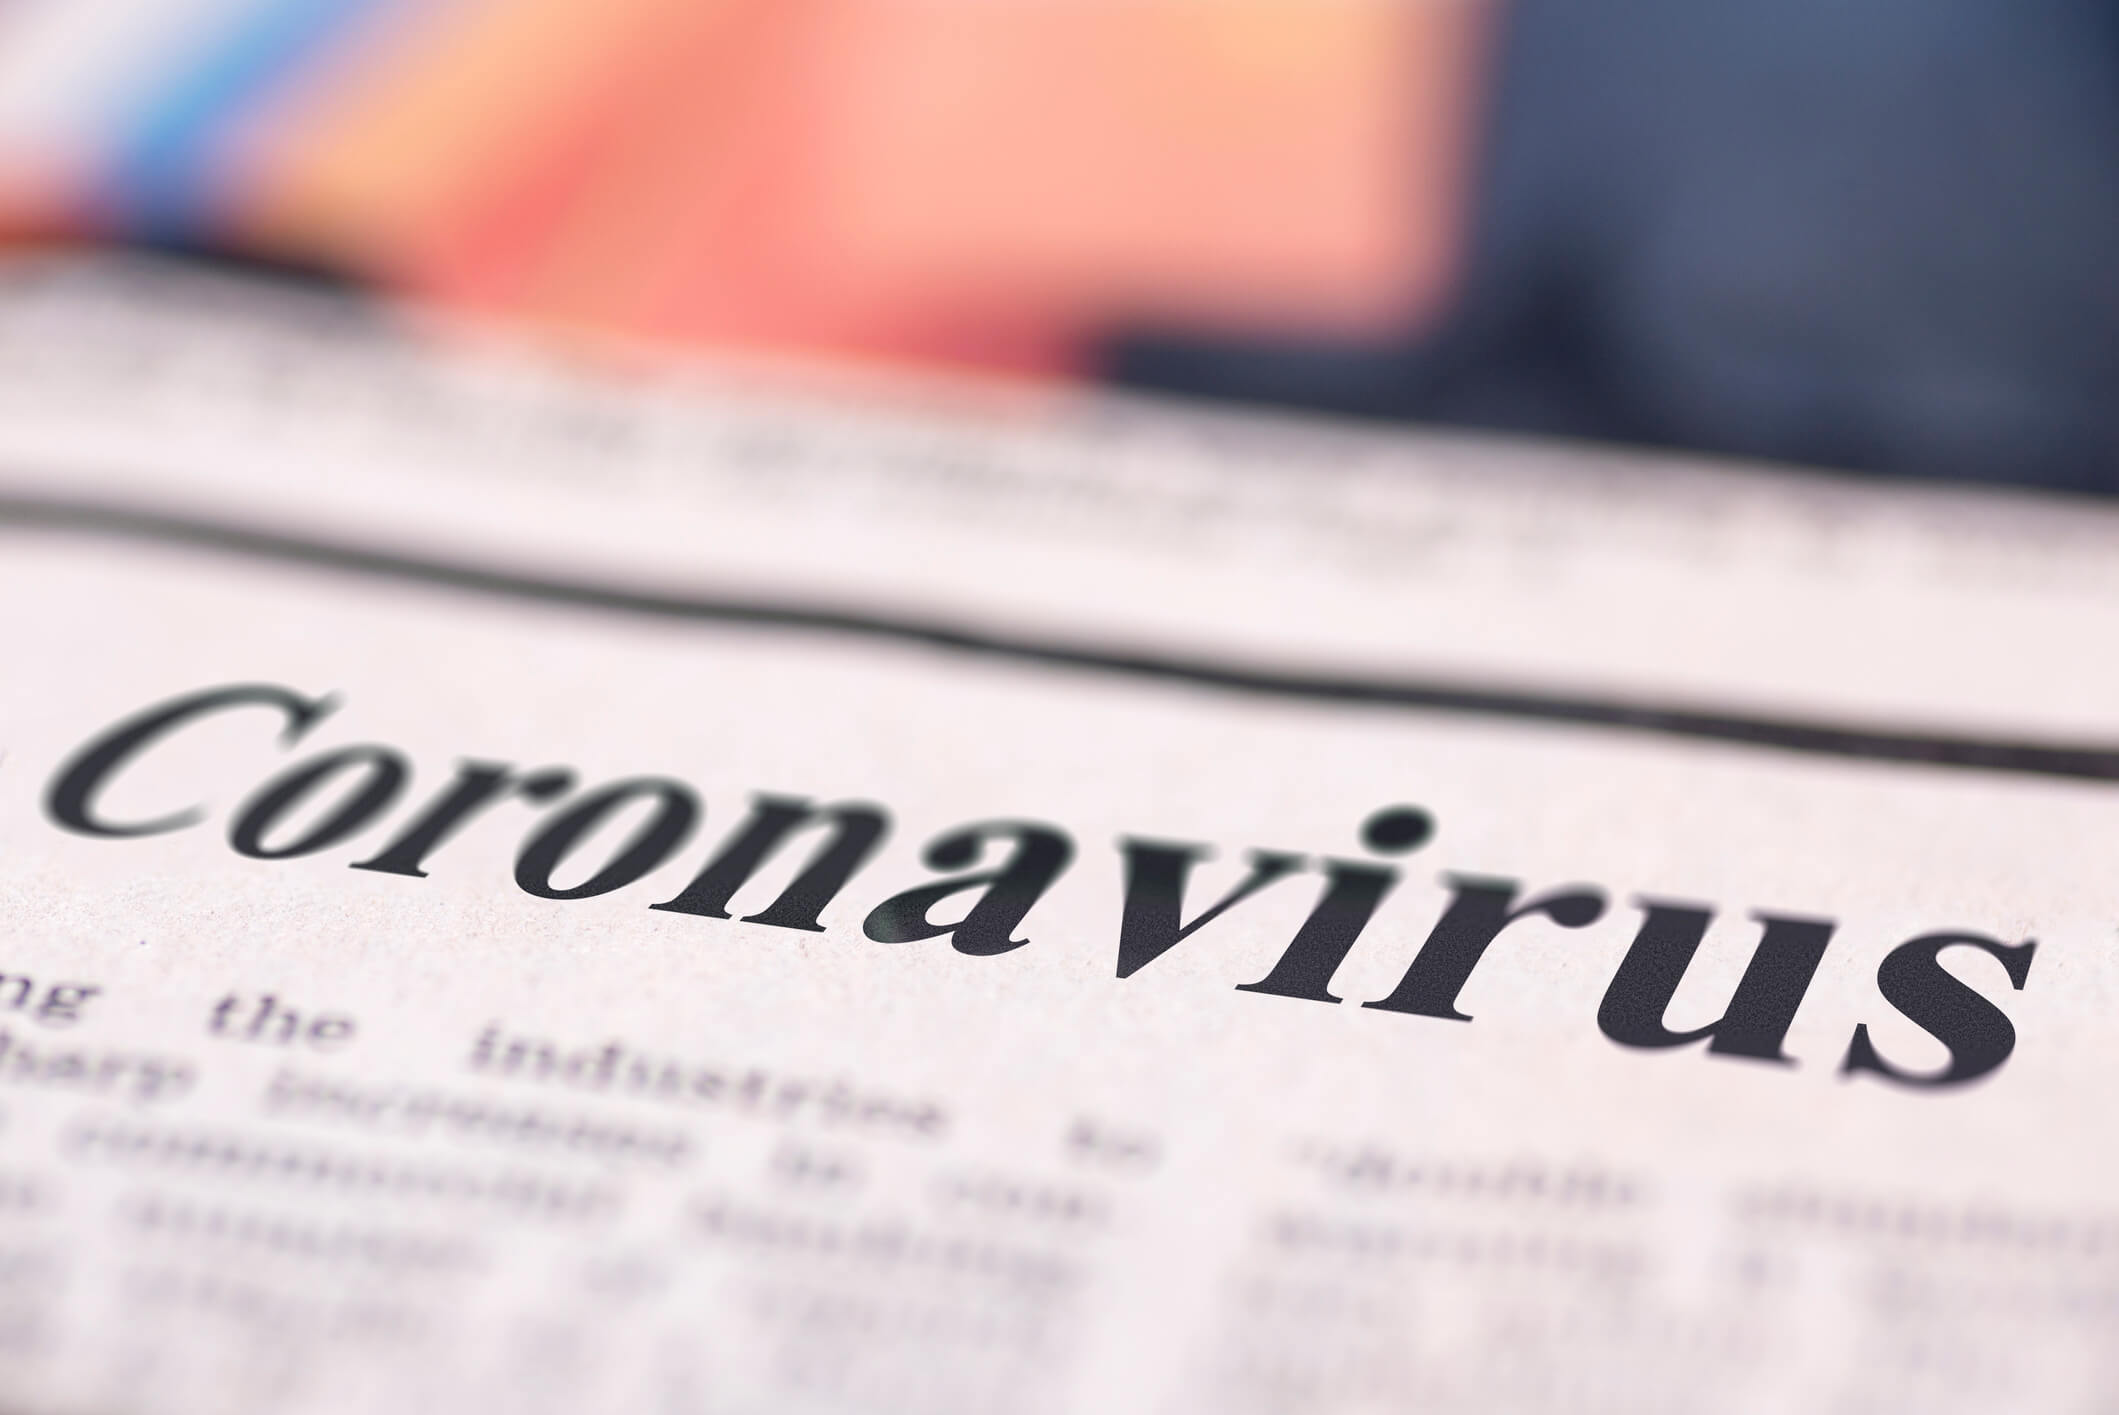 Newspaper with coronavirus headline